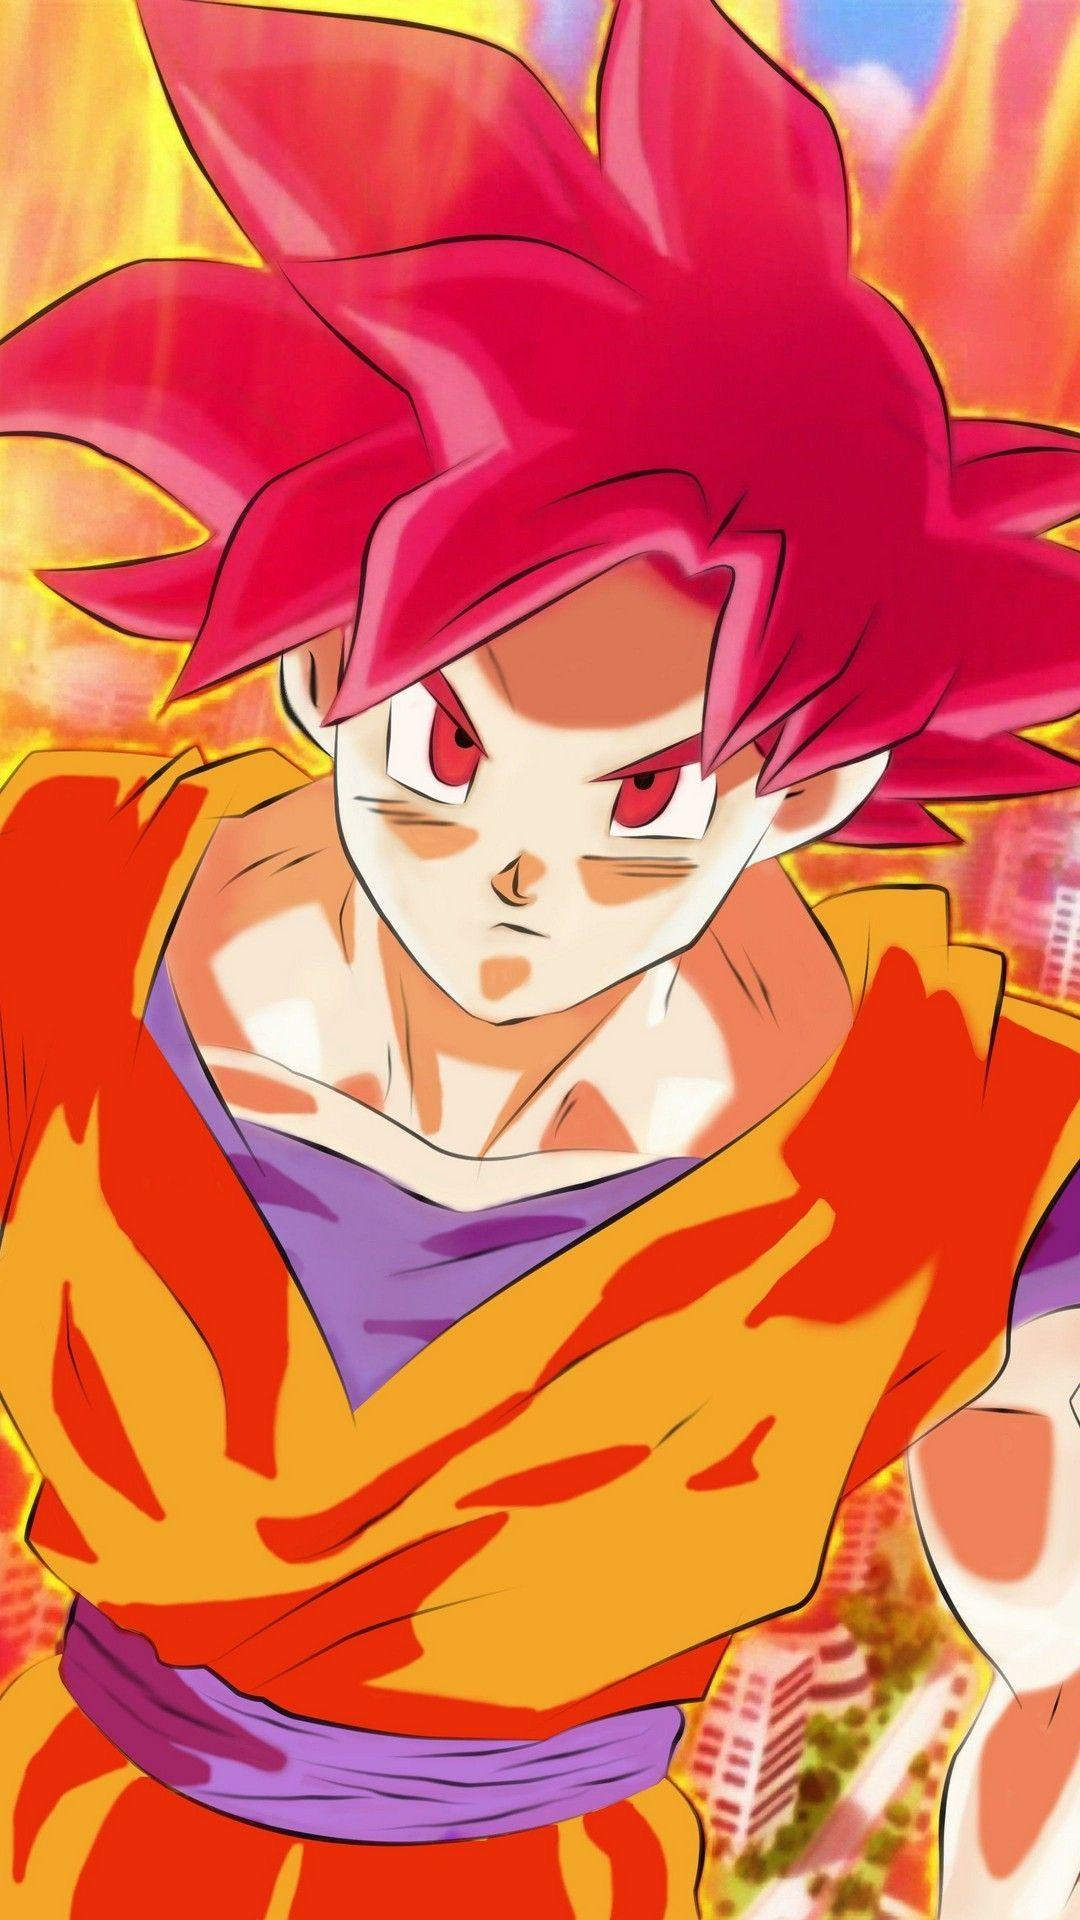 1080x1920 Goku Super Saiyan God iPhone Wallpapers